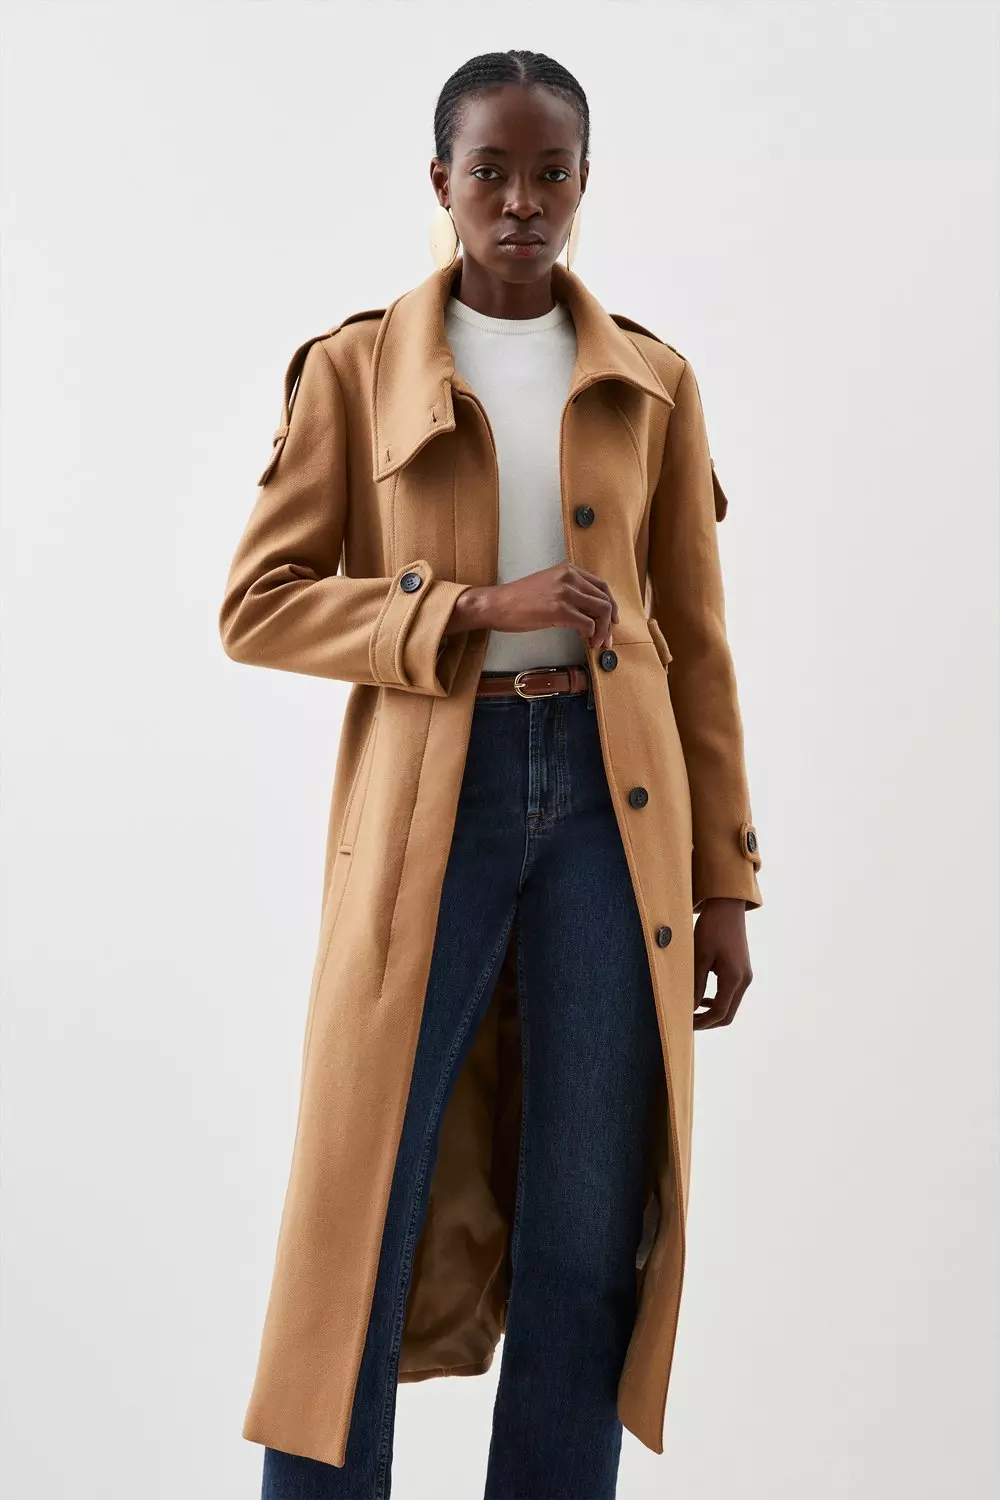 Tailored Wool Blend High Neck Belted Maxi Coat | Karen Millen